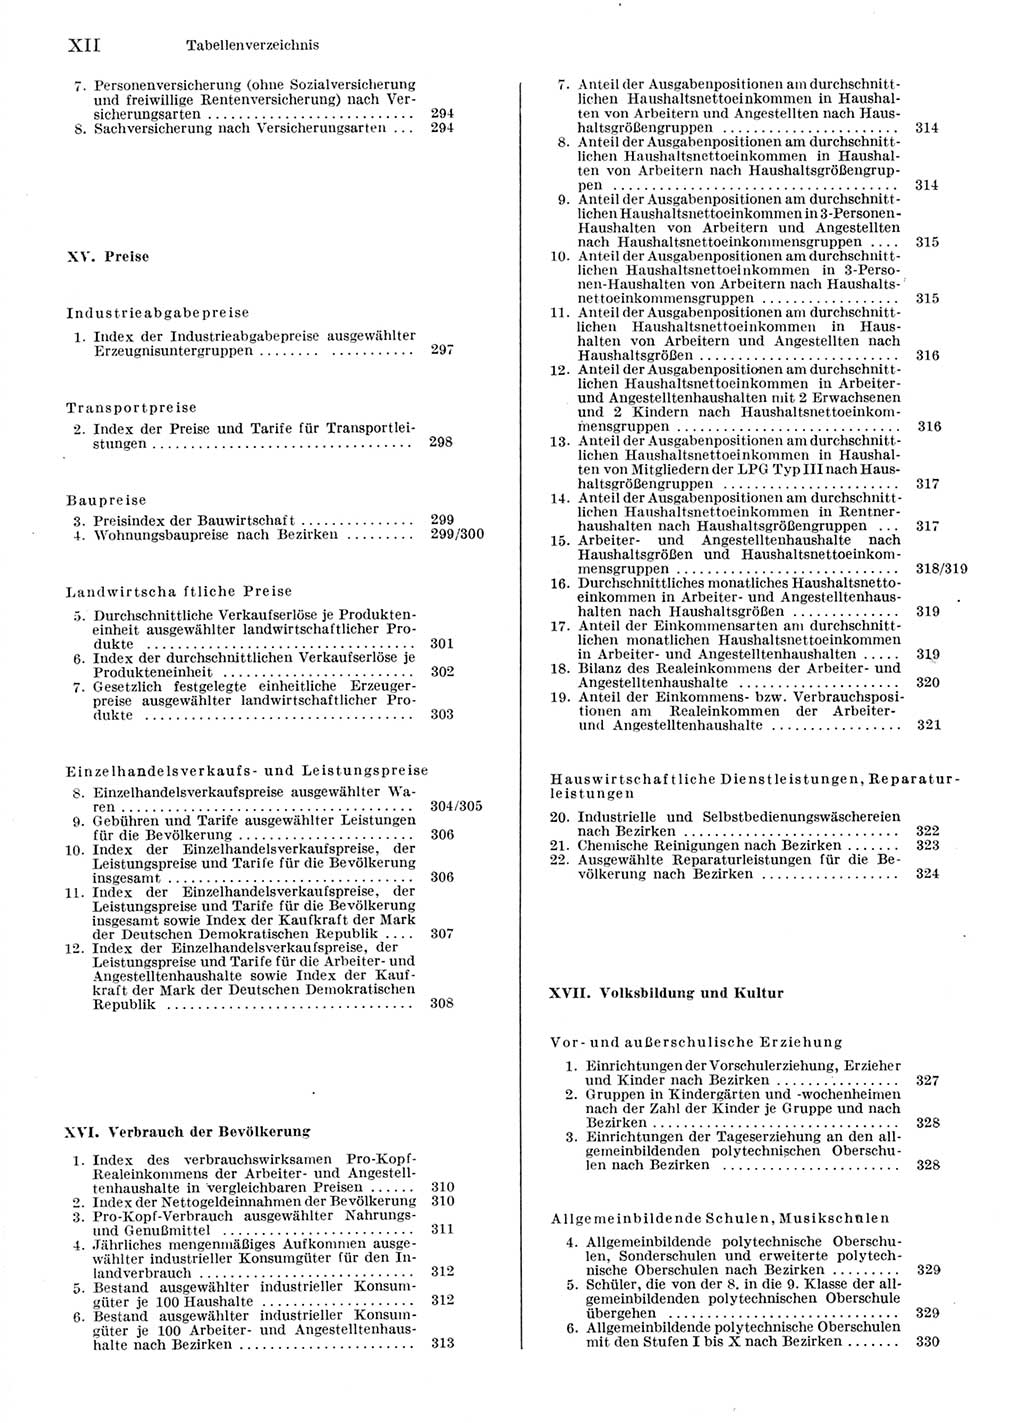 Statistisches Jahrbuch der Deutschen Demokratischen Republik (DDR) 1976, Seite 12 (Stat. Jb. DDR 1976, S. 12)